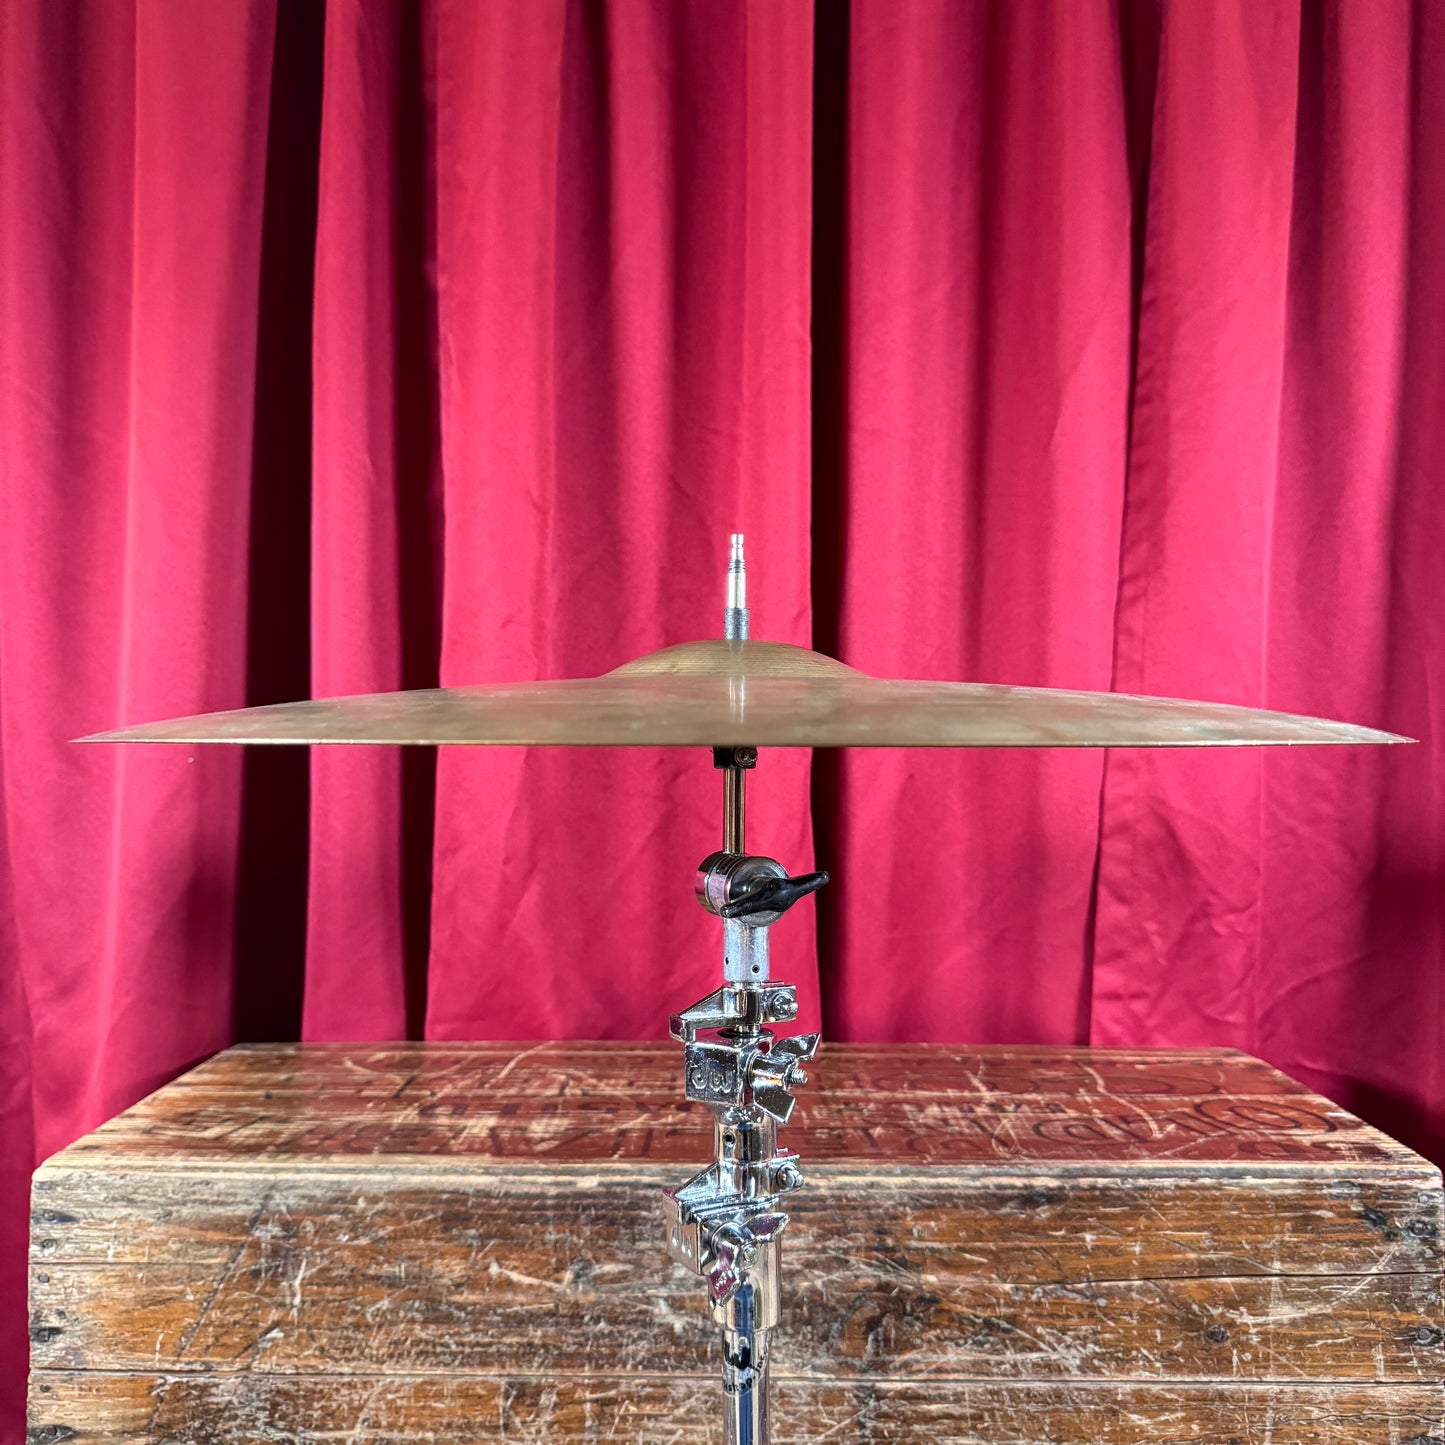 20" Zildjian A 1960s Ride Cymbal 2600g *Video Demo*